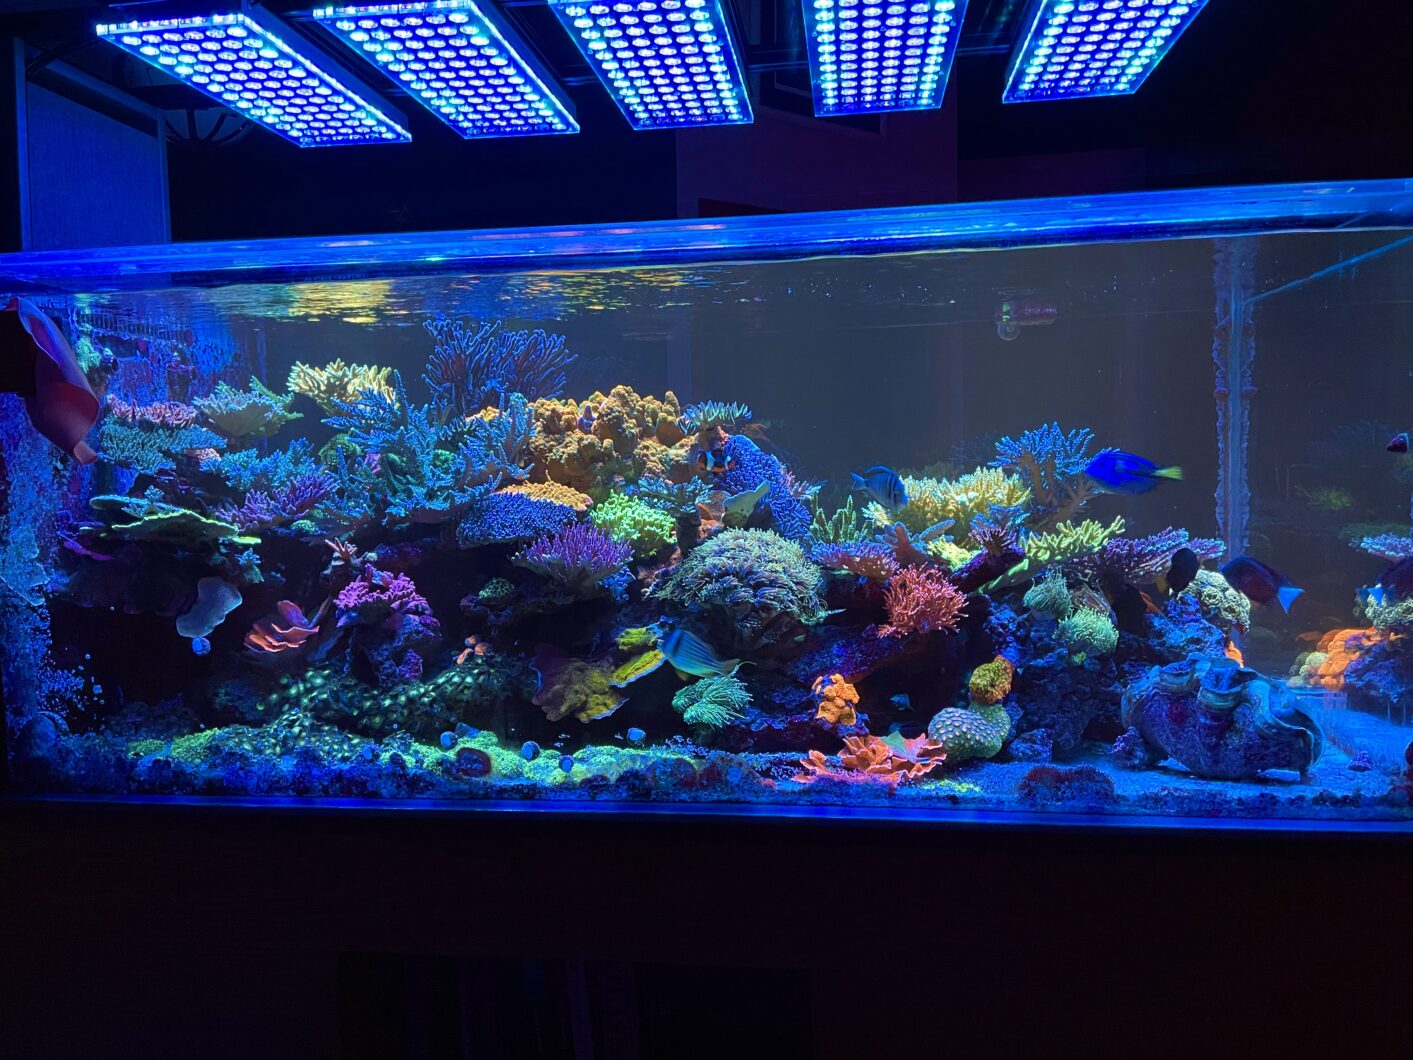 Atlantik-iCon-det-bedste-lys-til-koral-pop-fluorescens